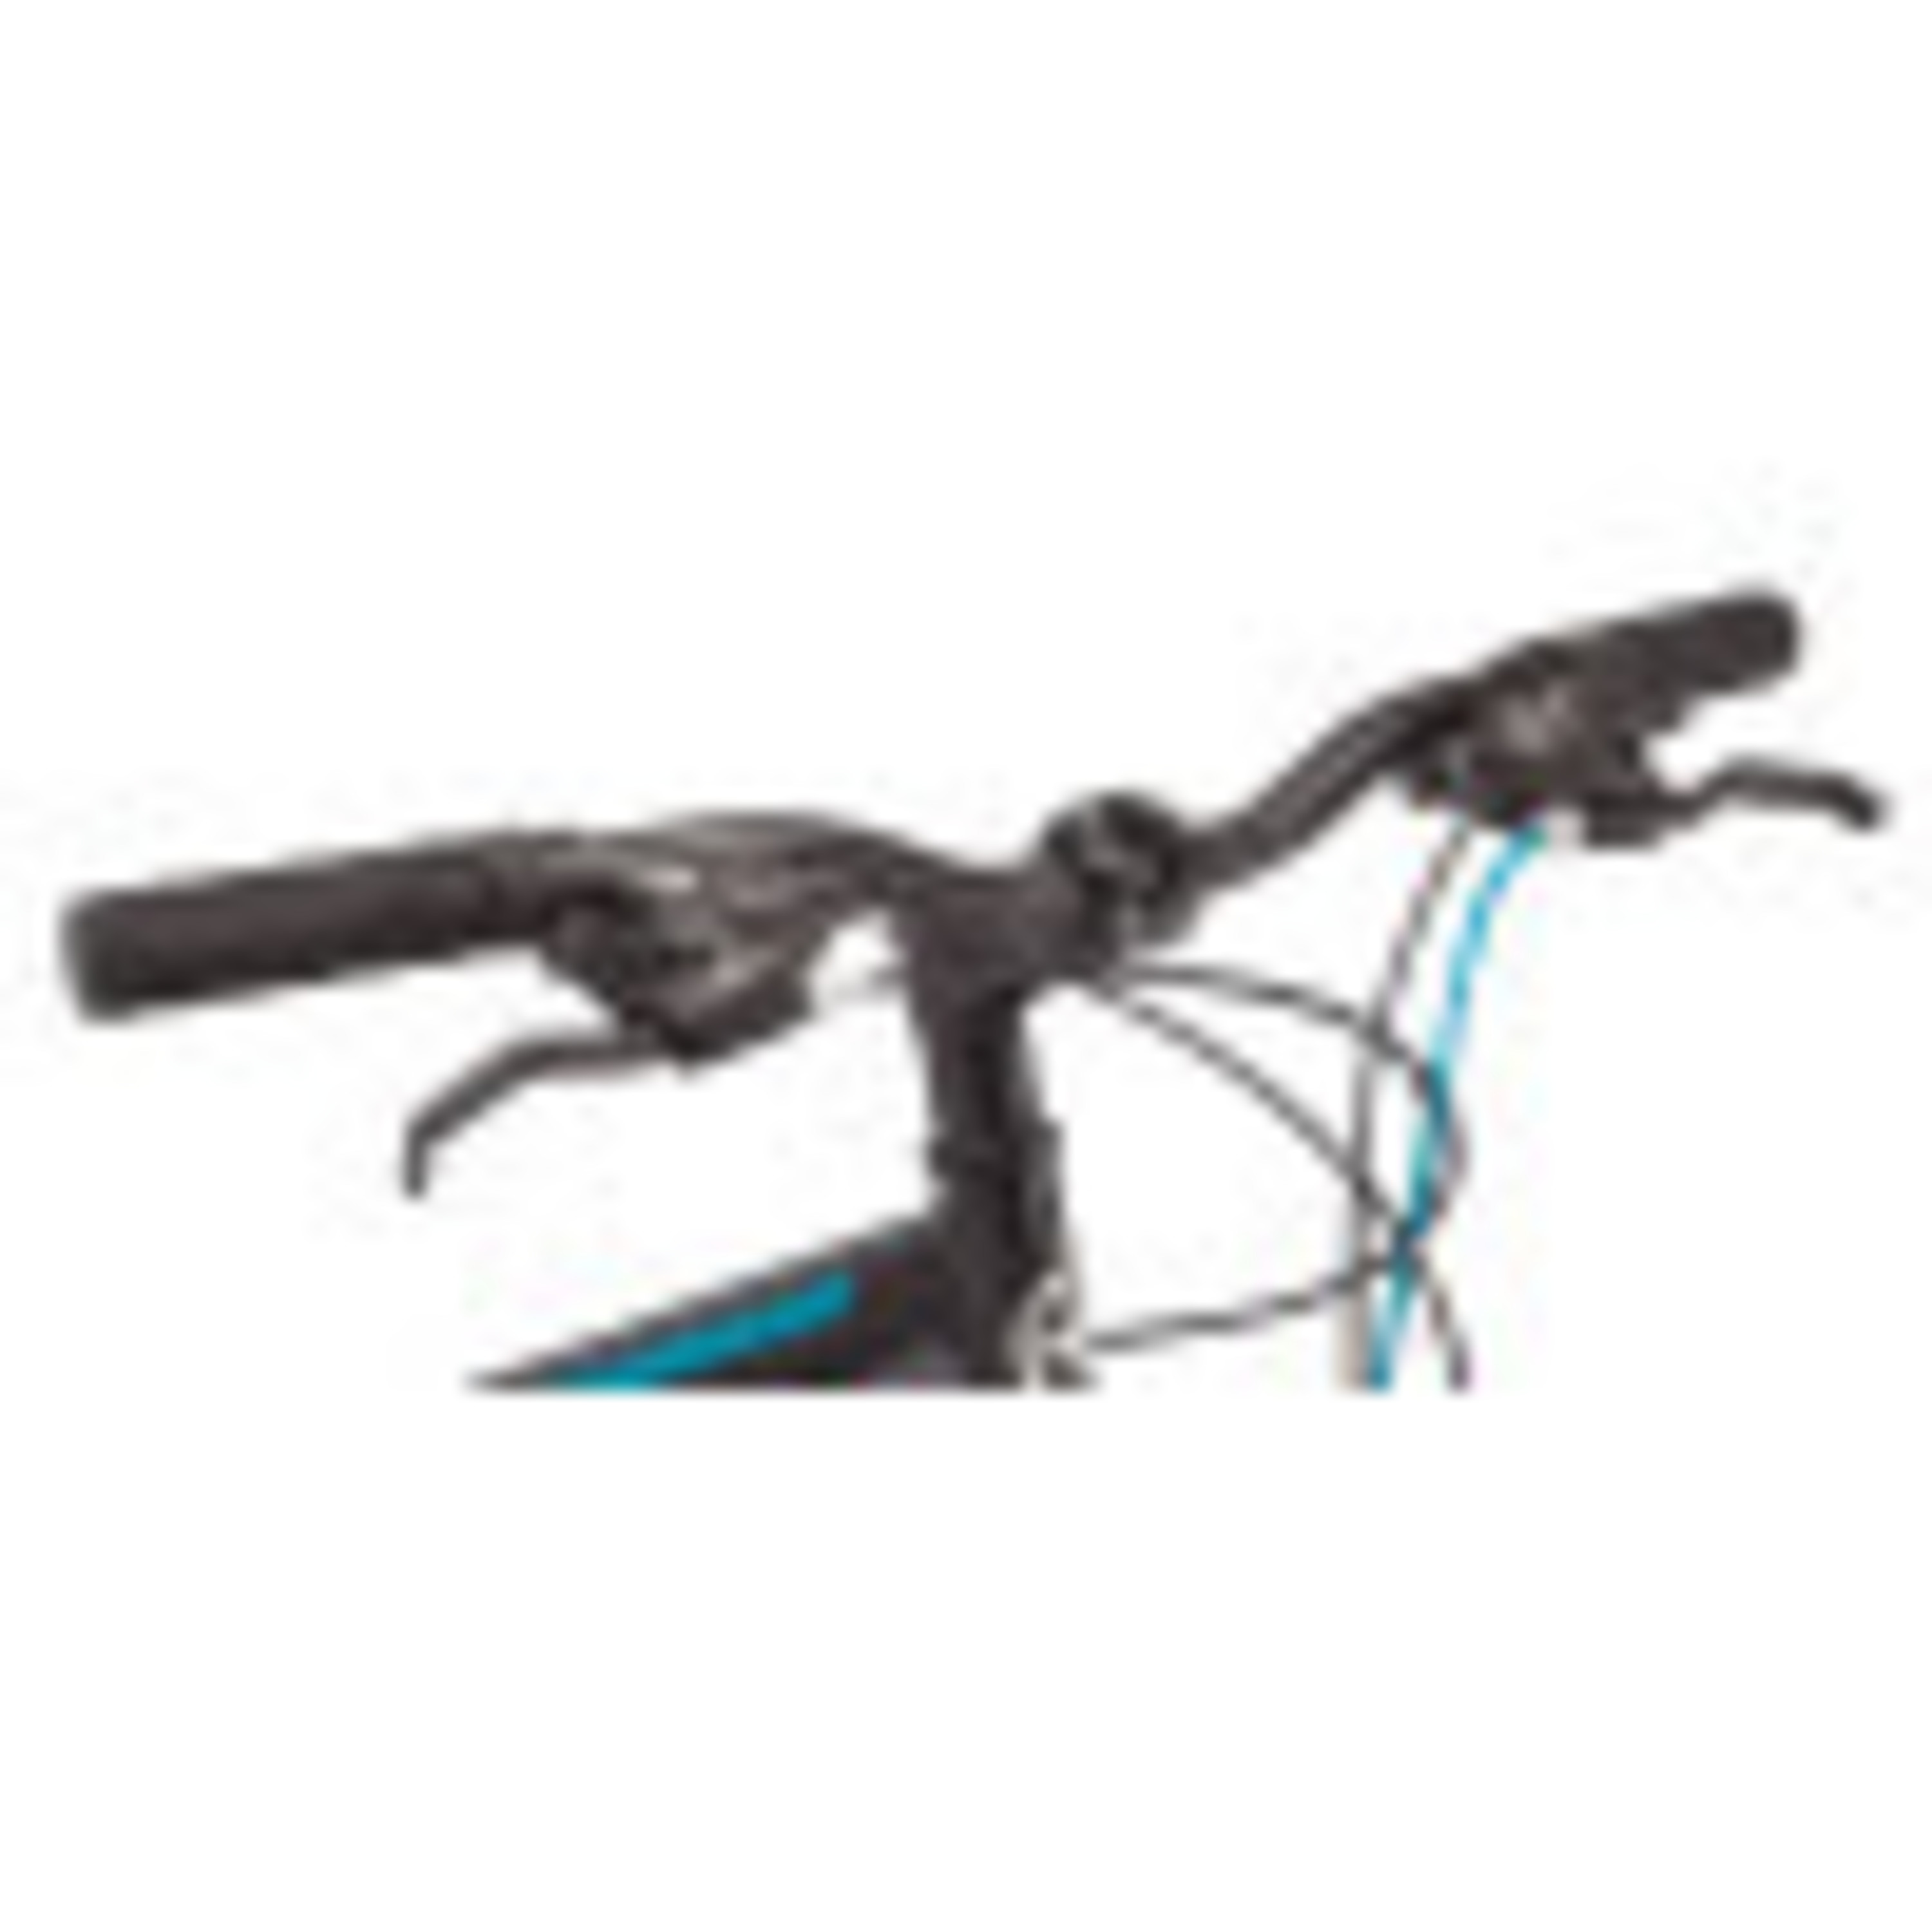 Schwinn 24-in. Sidewinder Unisex Mountain Bike, Black & Teal, 21 Speeds - image 5 of 8